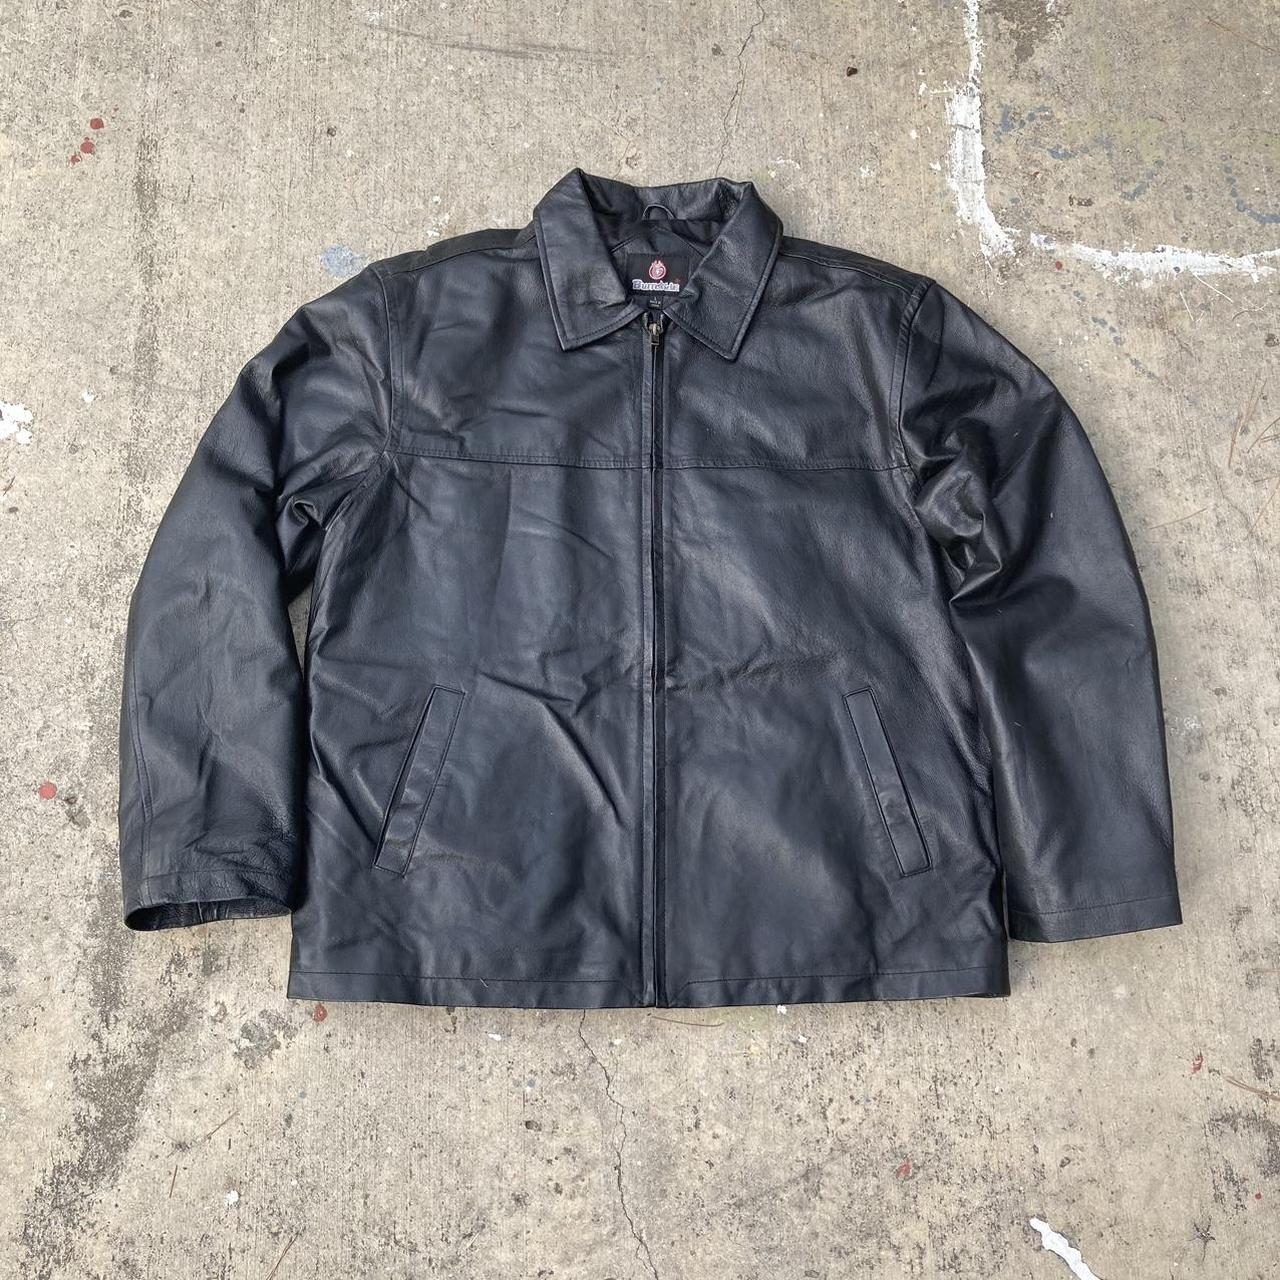 Y2K Burnside Leather Jacket SZ L No flaws, soft... - Depop